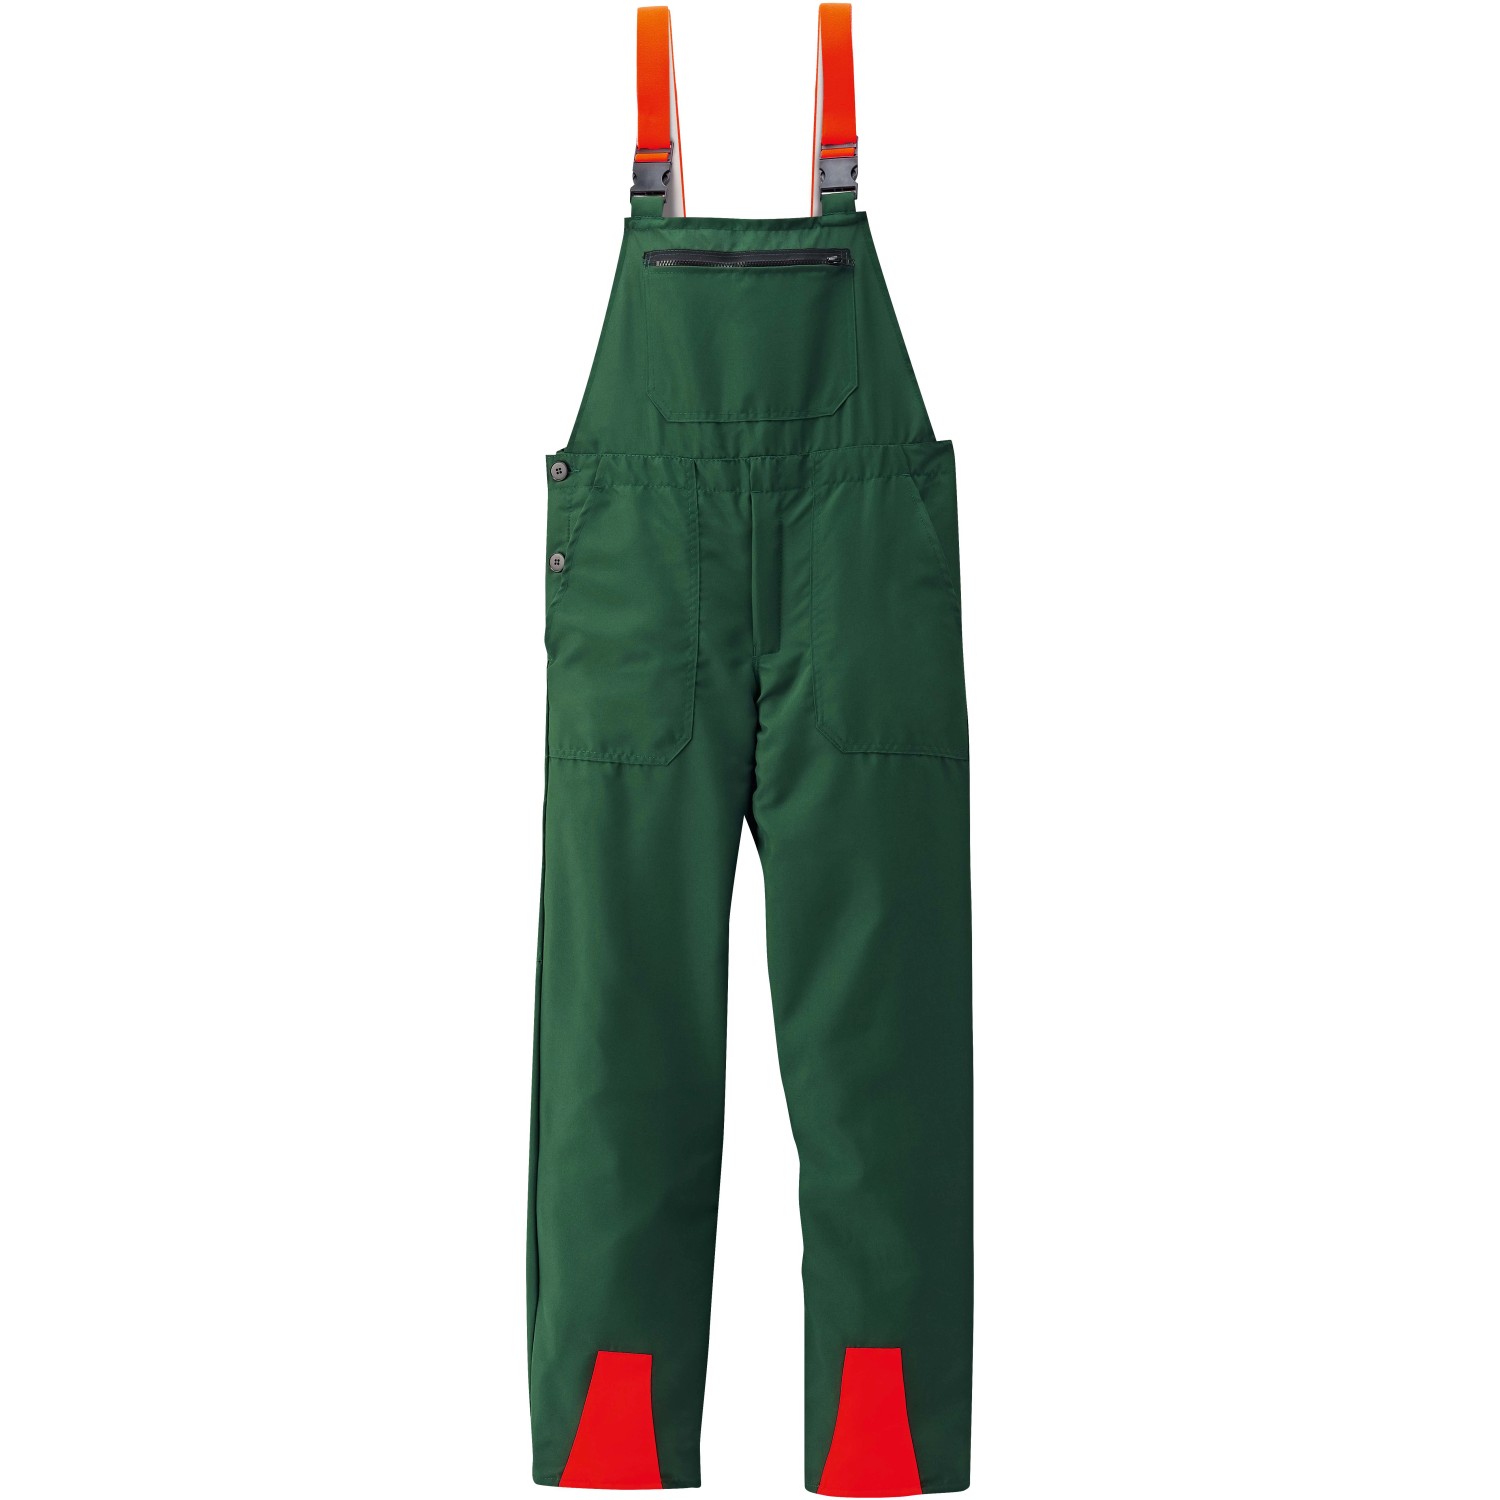 Schnittschutz-Latzhose Basic Grün-Orange Gr. 54 von Scheibler workwear